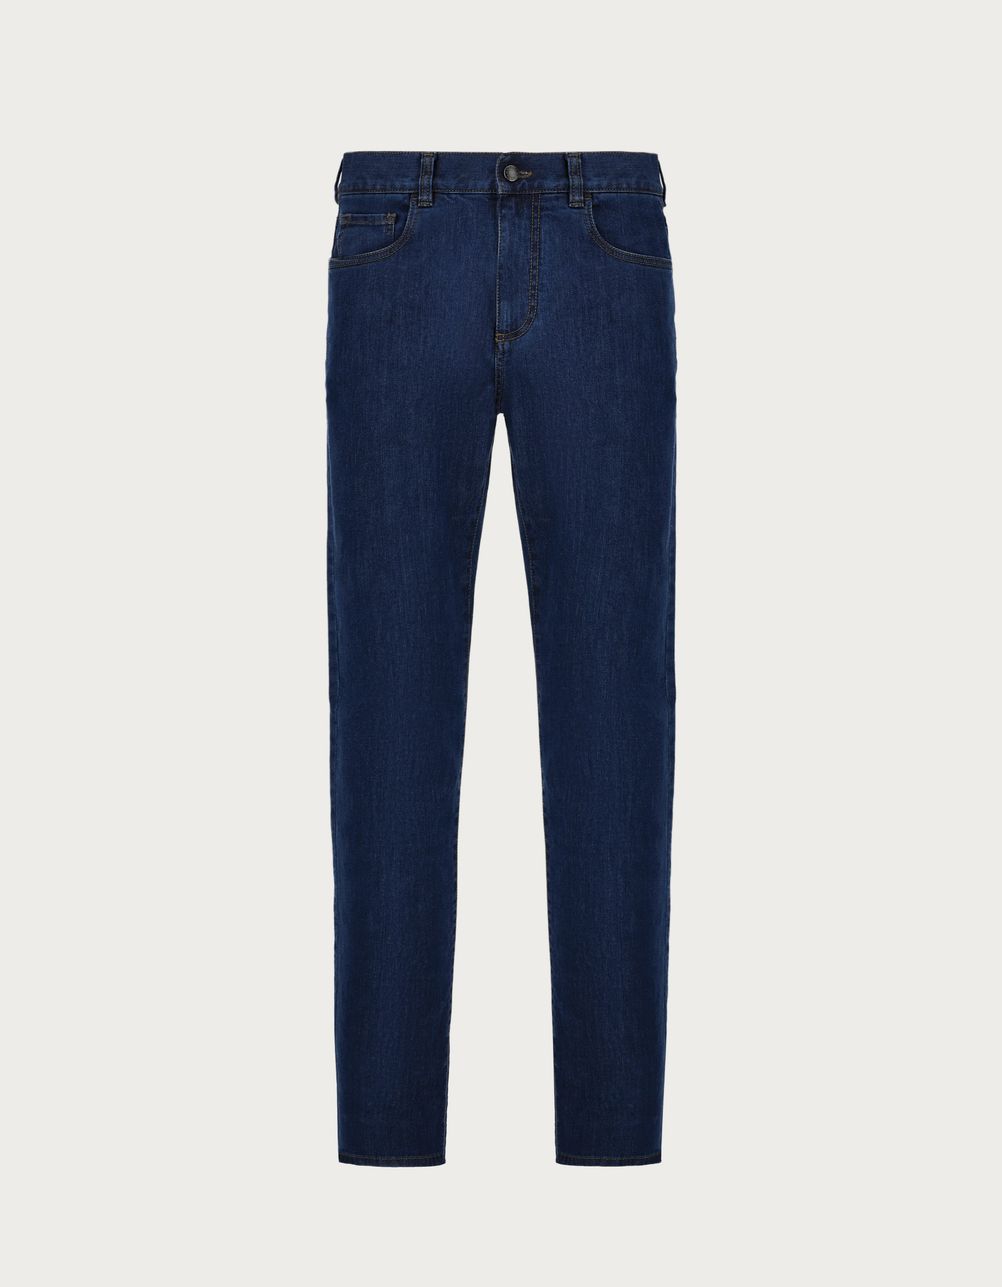 Five-pocket regular-fit stretch denim pants in blue